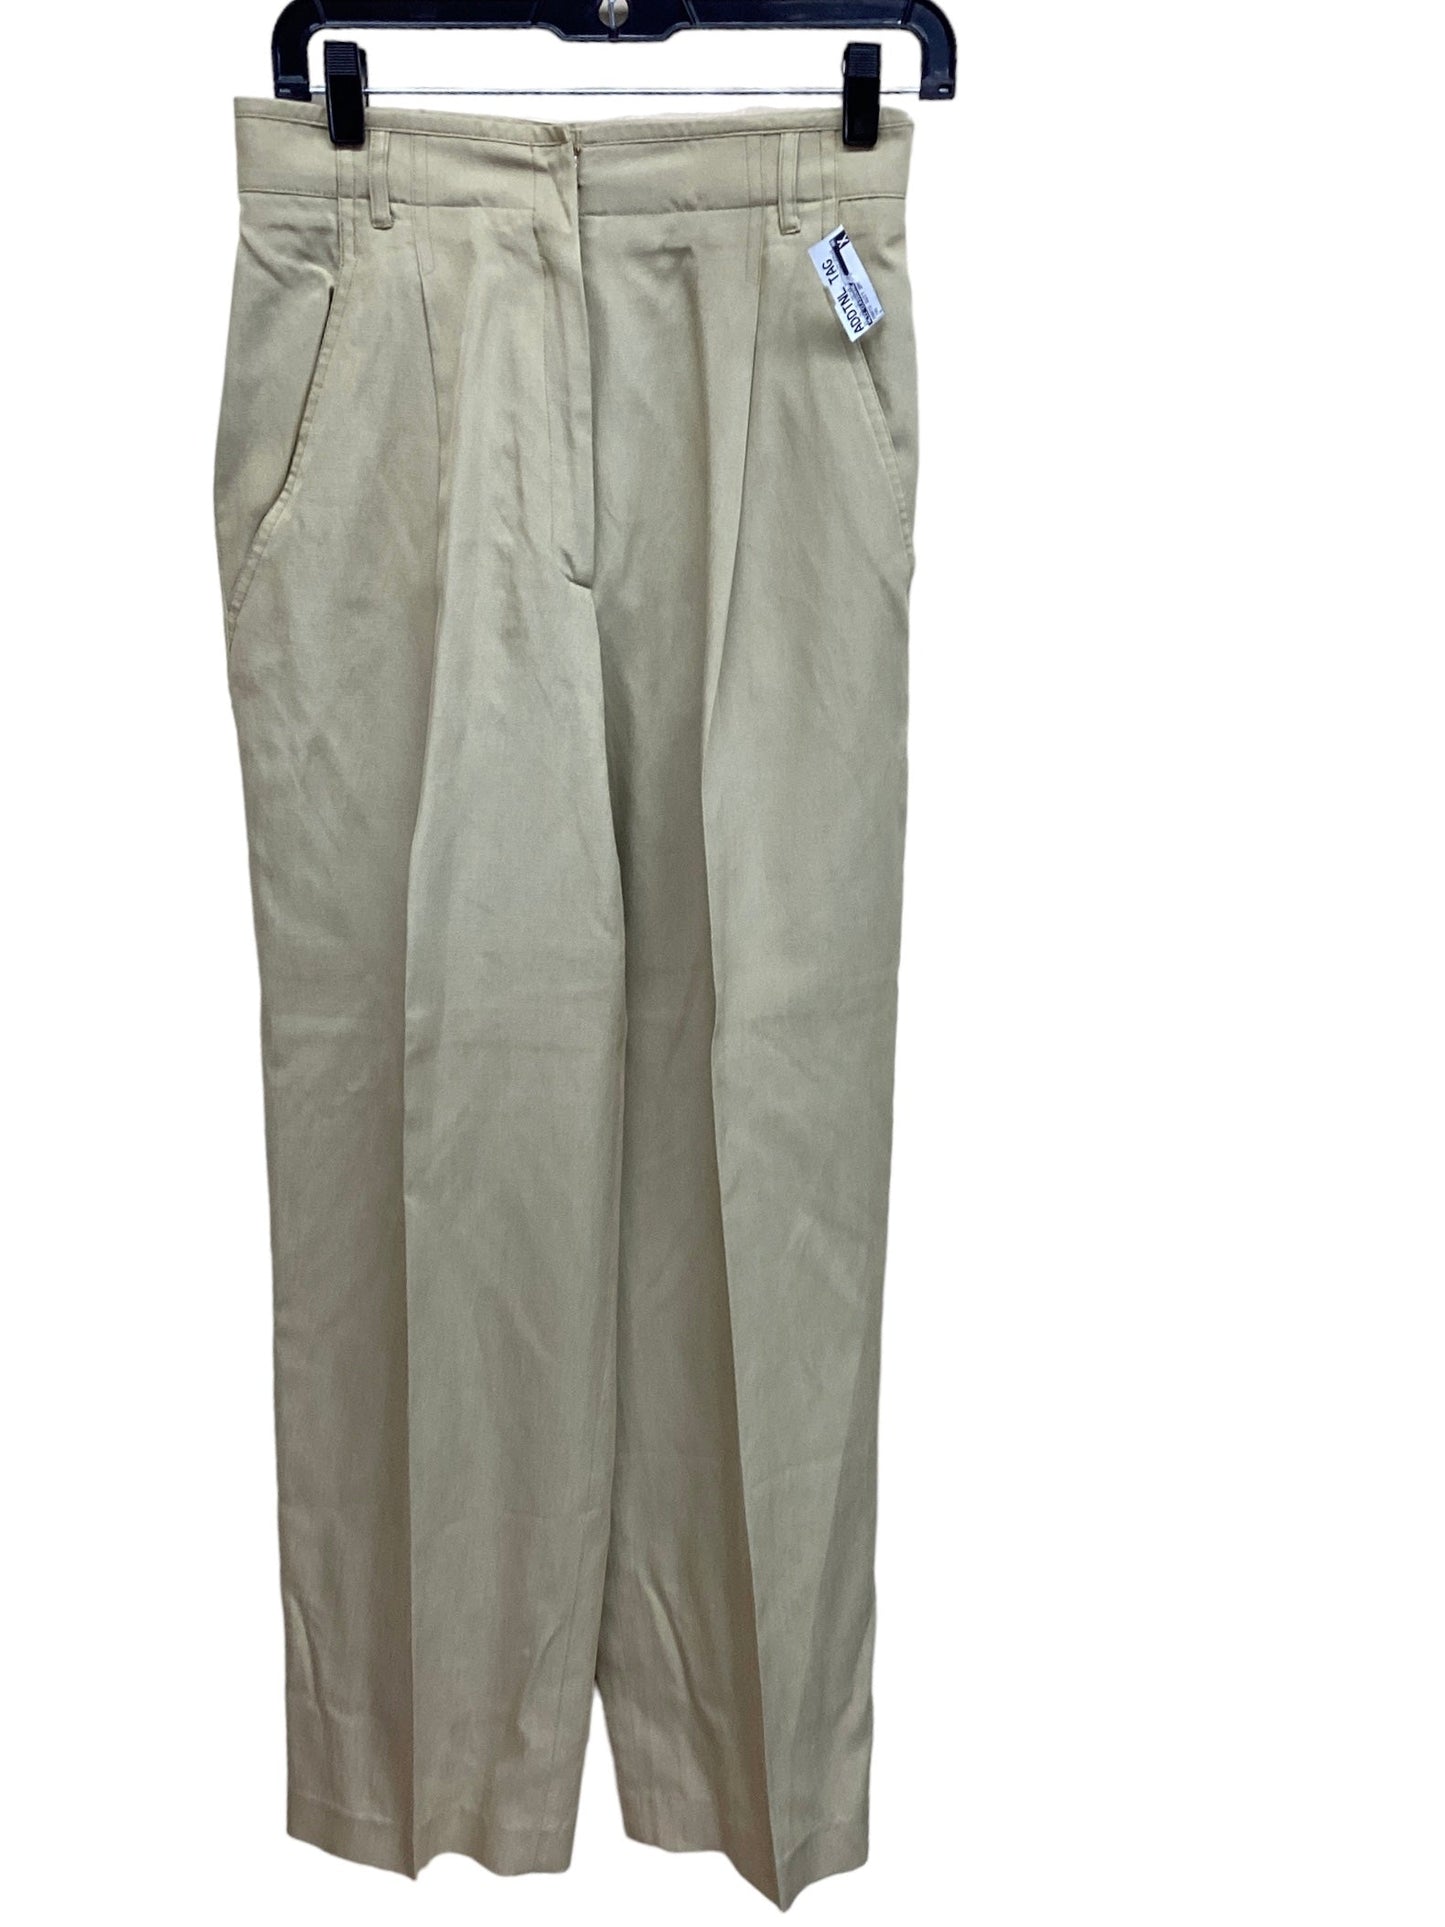 Pants Suit 2pc By Liz Claiborne  Size: 8